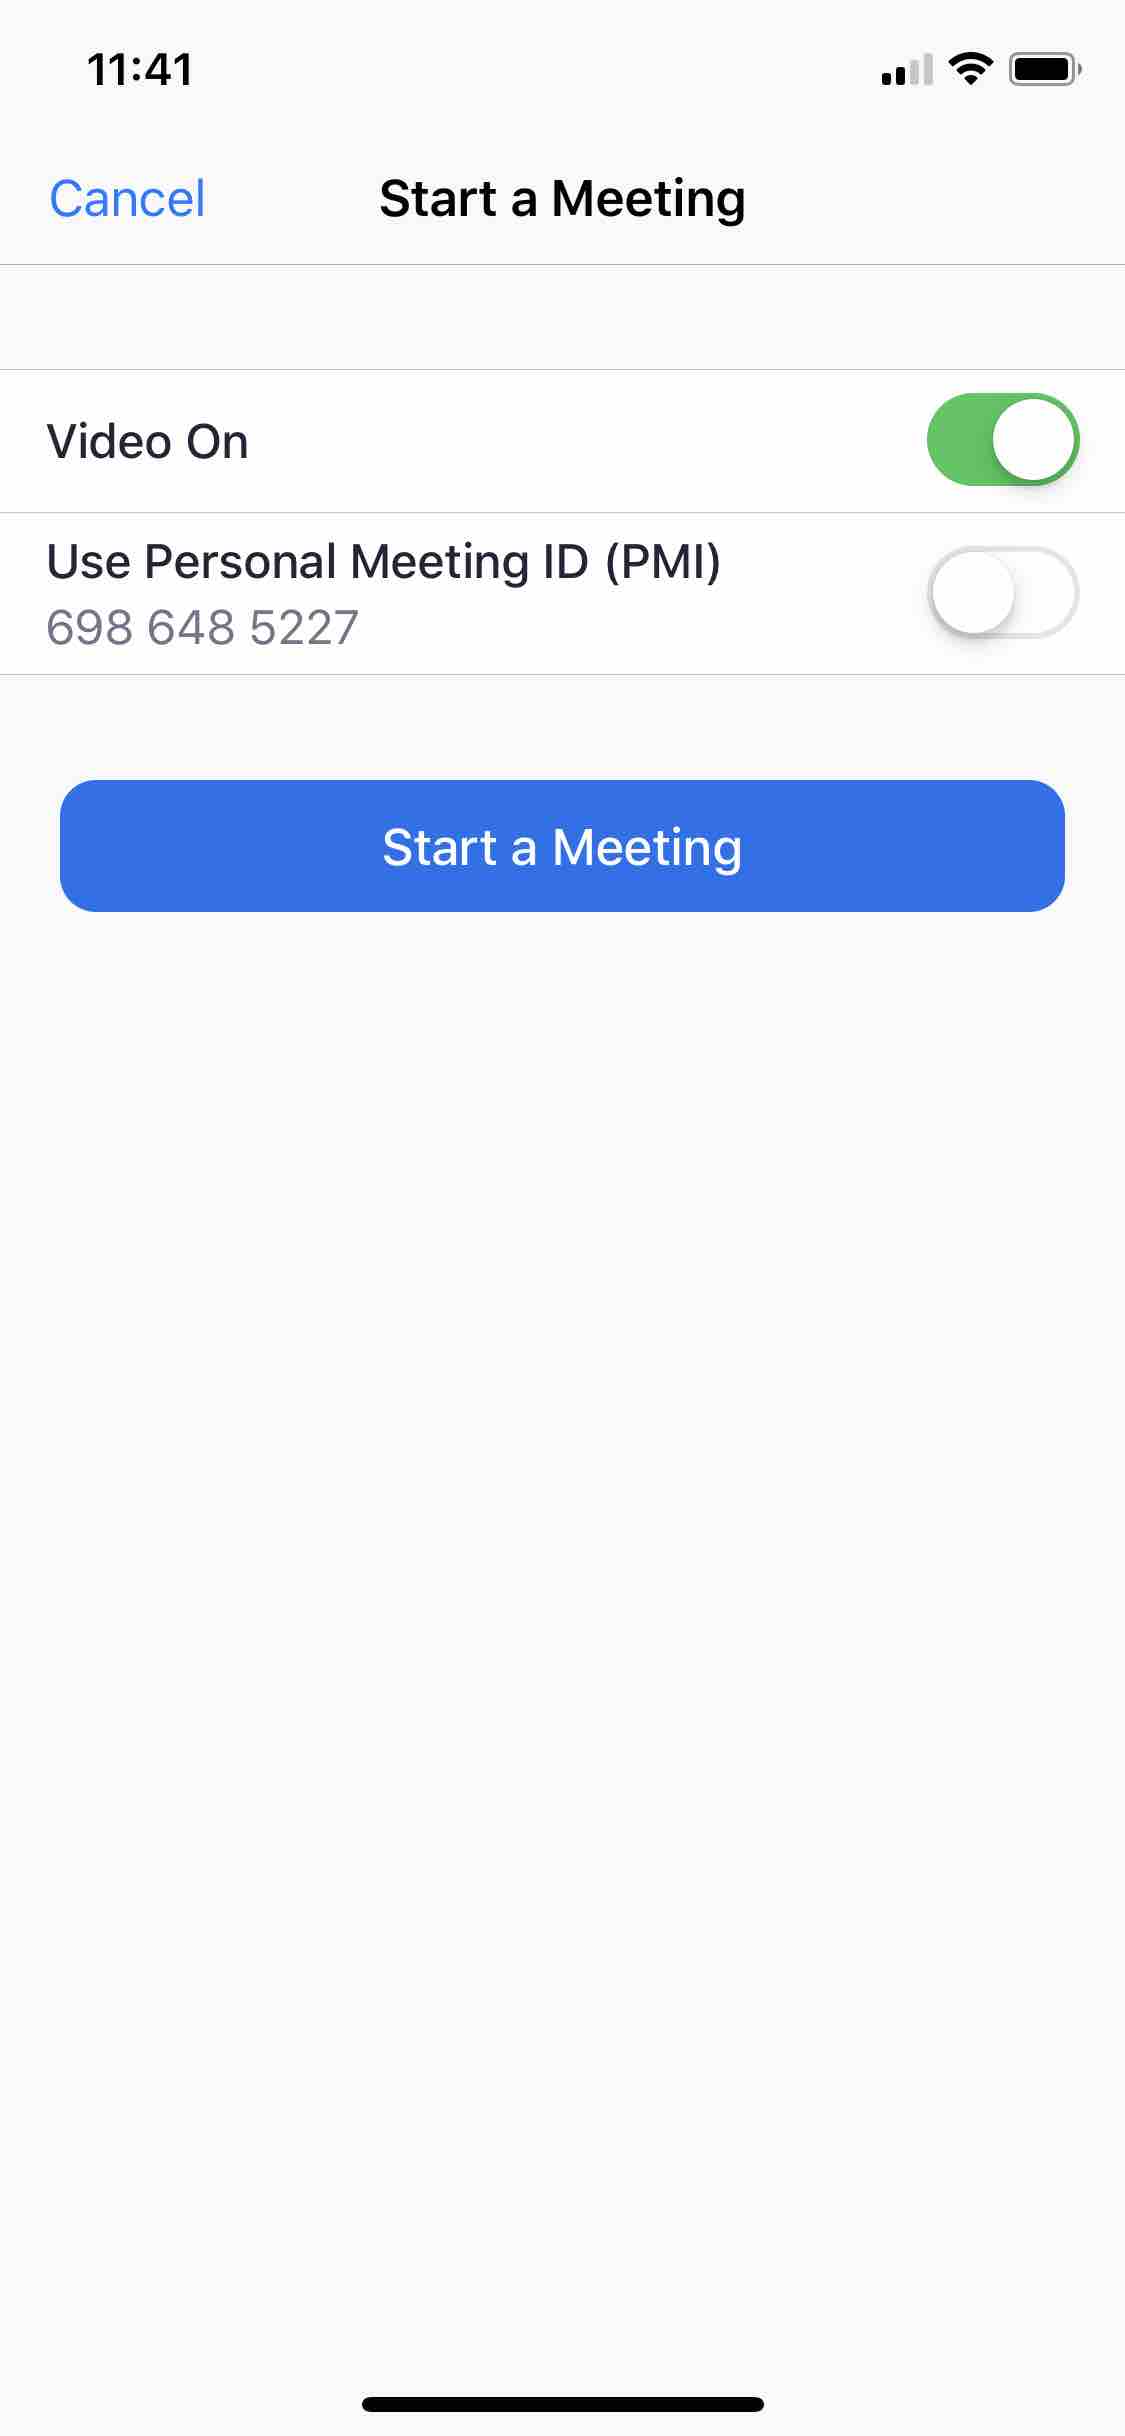 Start a Meeting